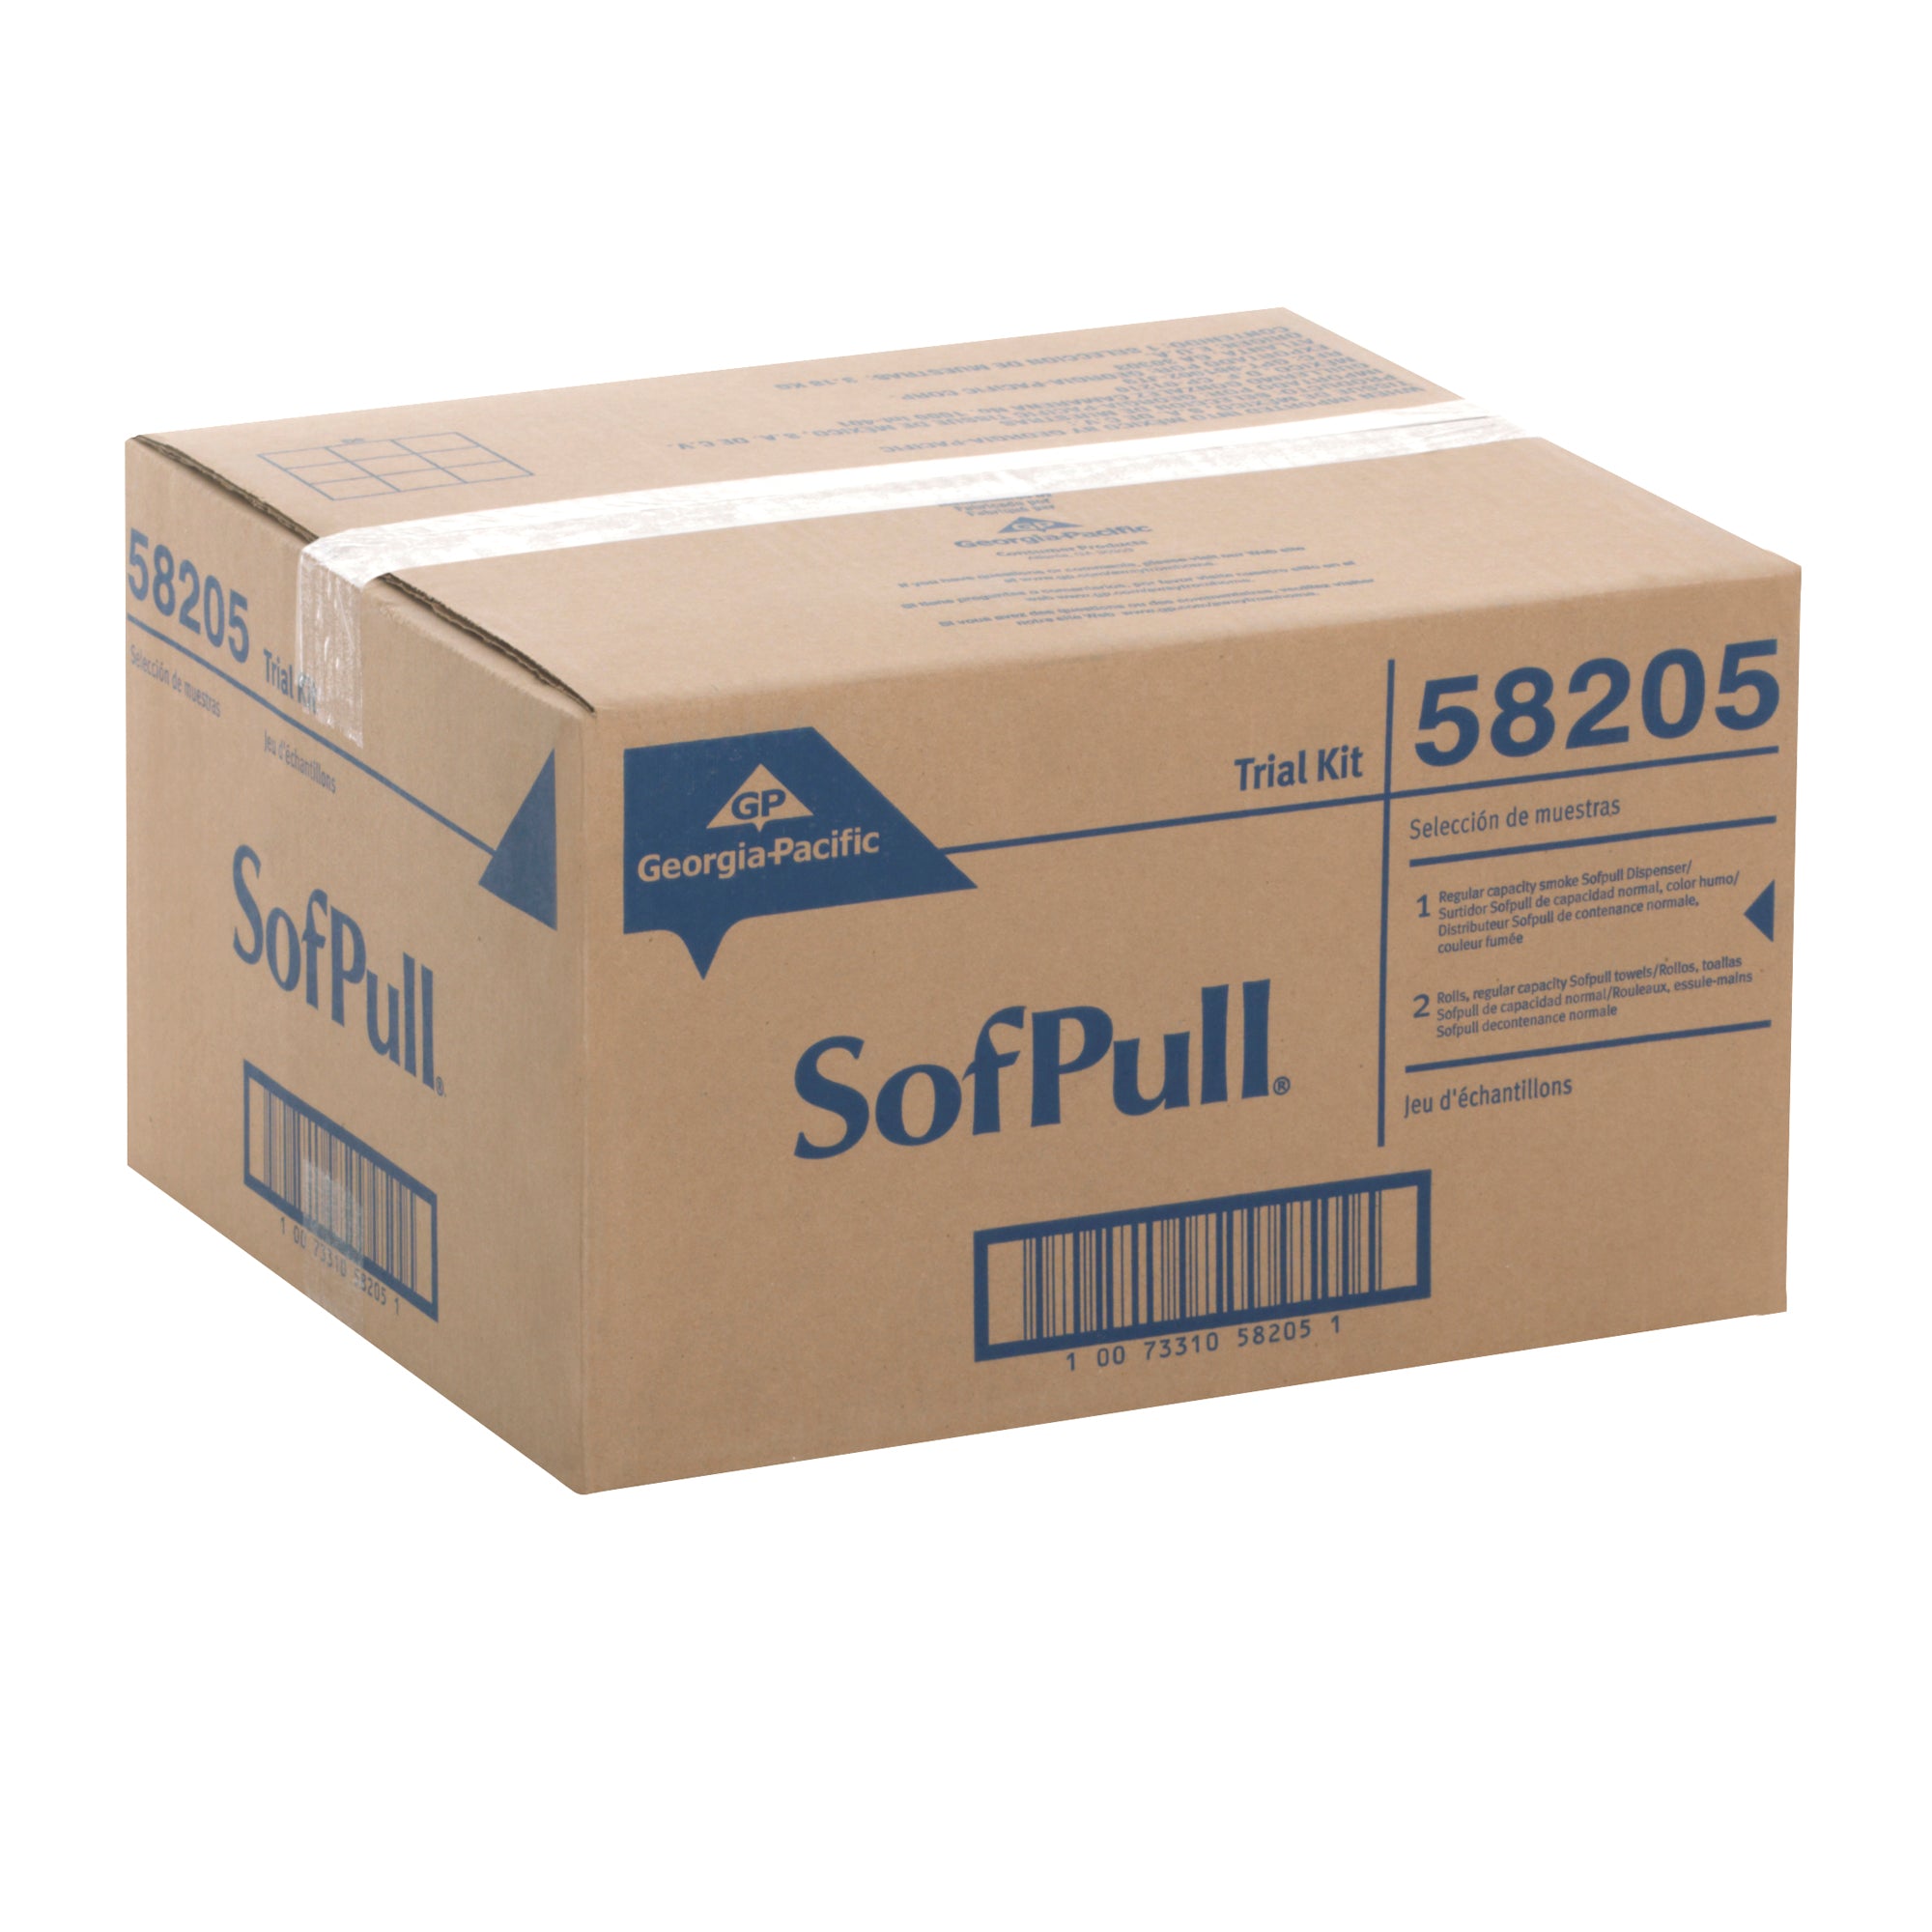 ערכת ניסיון של מתקן מגבות נייר בקיבולת רגילה של SOFPULL® CENTERPULL, מתקן אחד 58204 ושני גלילי מגבות נייר 28124